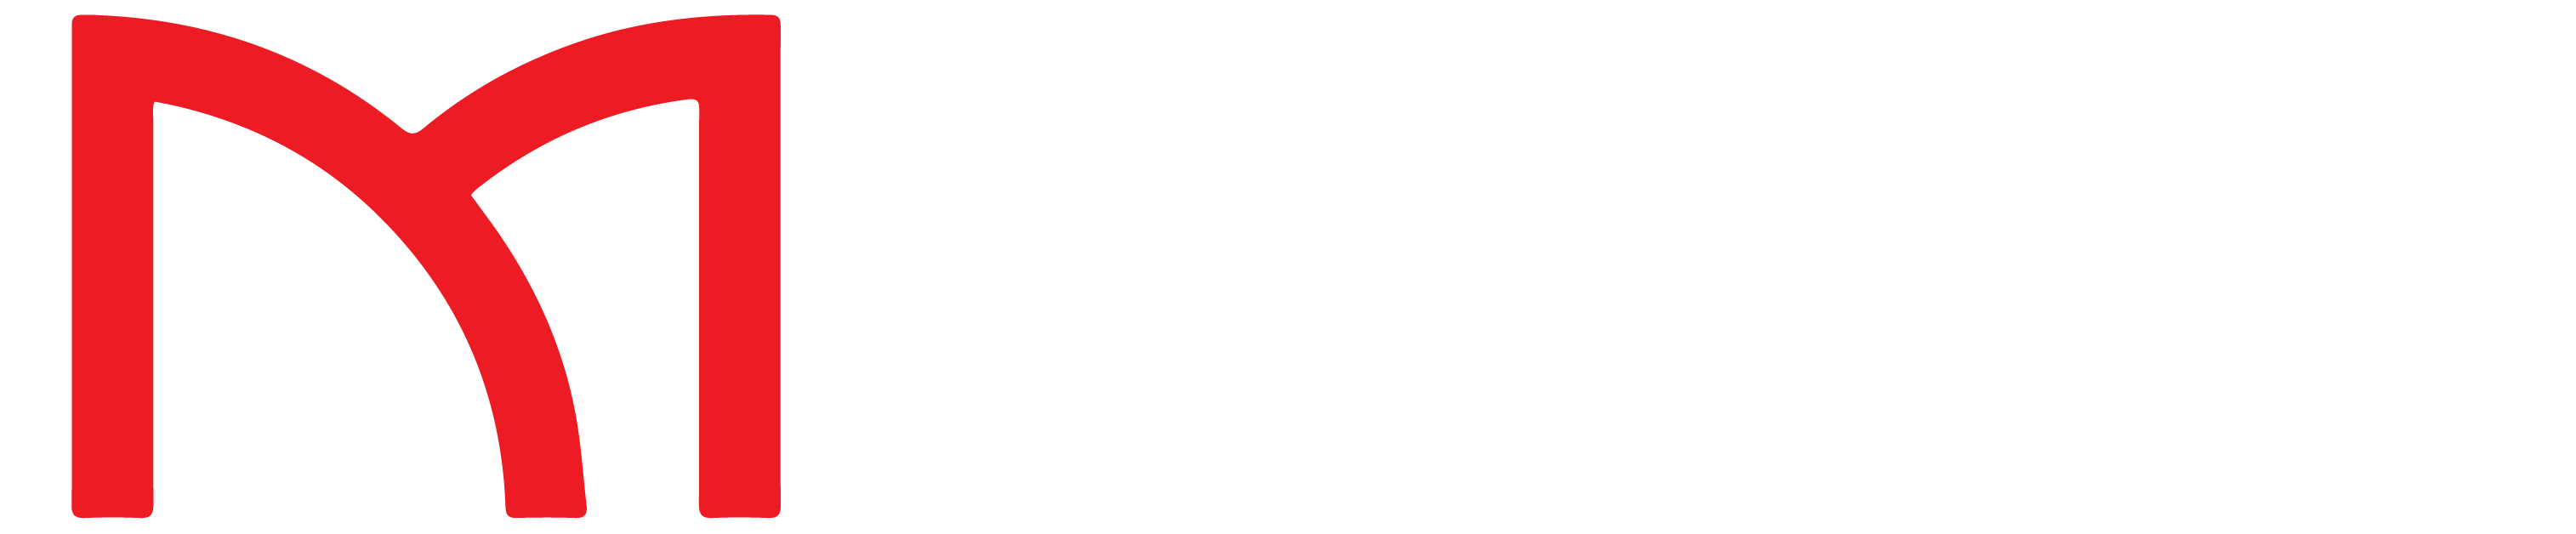 Wireless Masters Logo